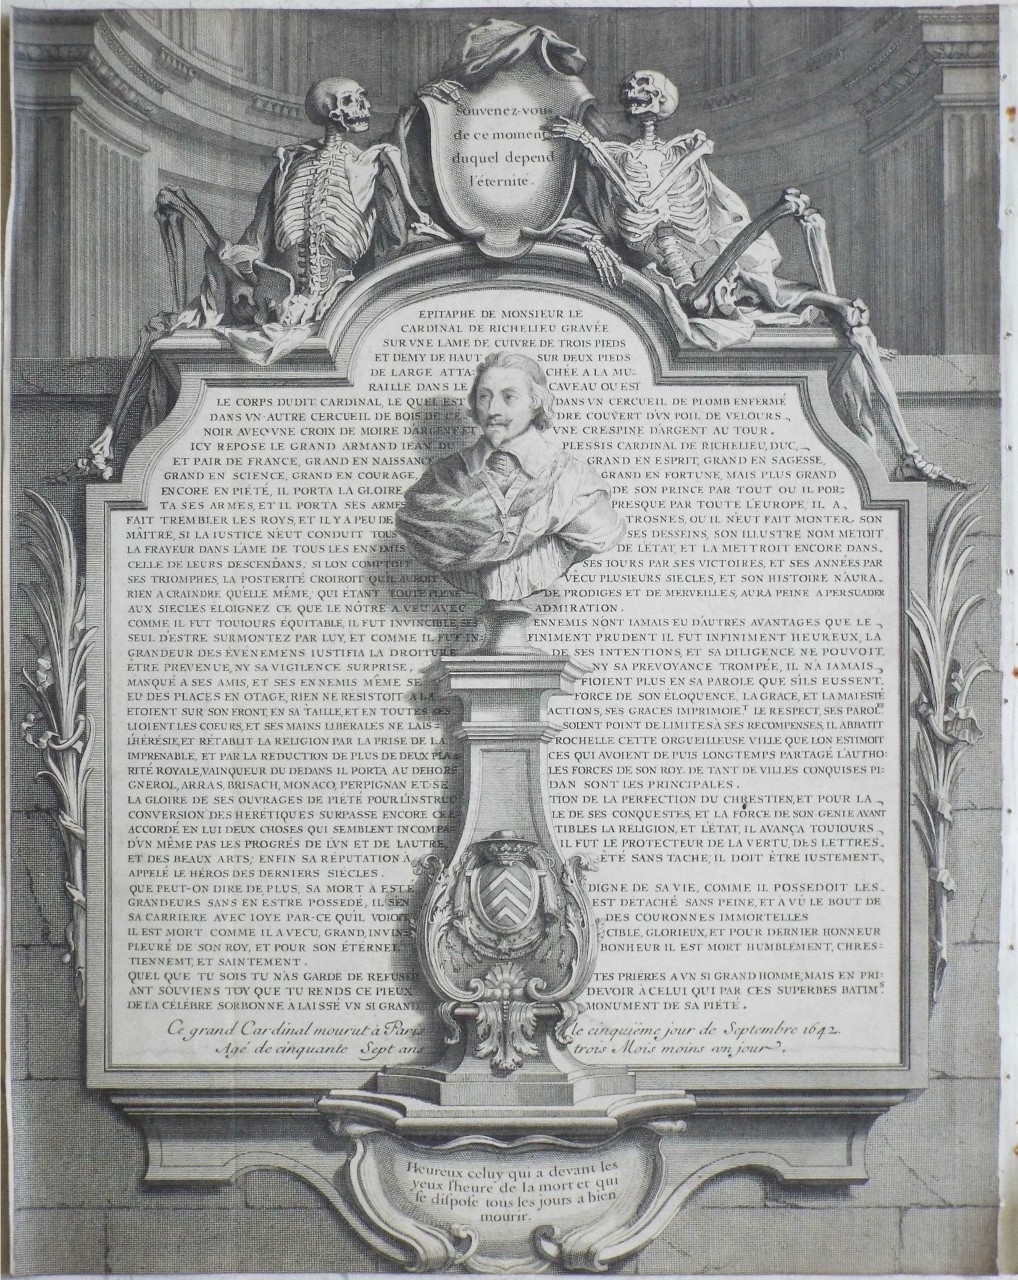 Print - Epitaph de Monsieur le Cardinal de Richelieu